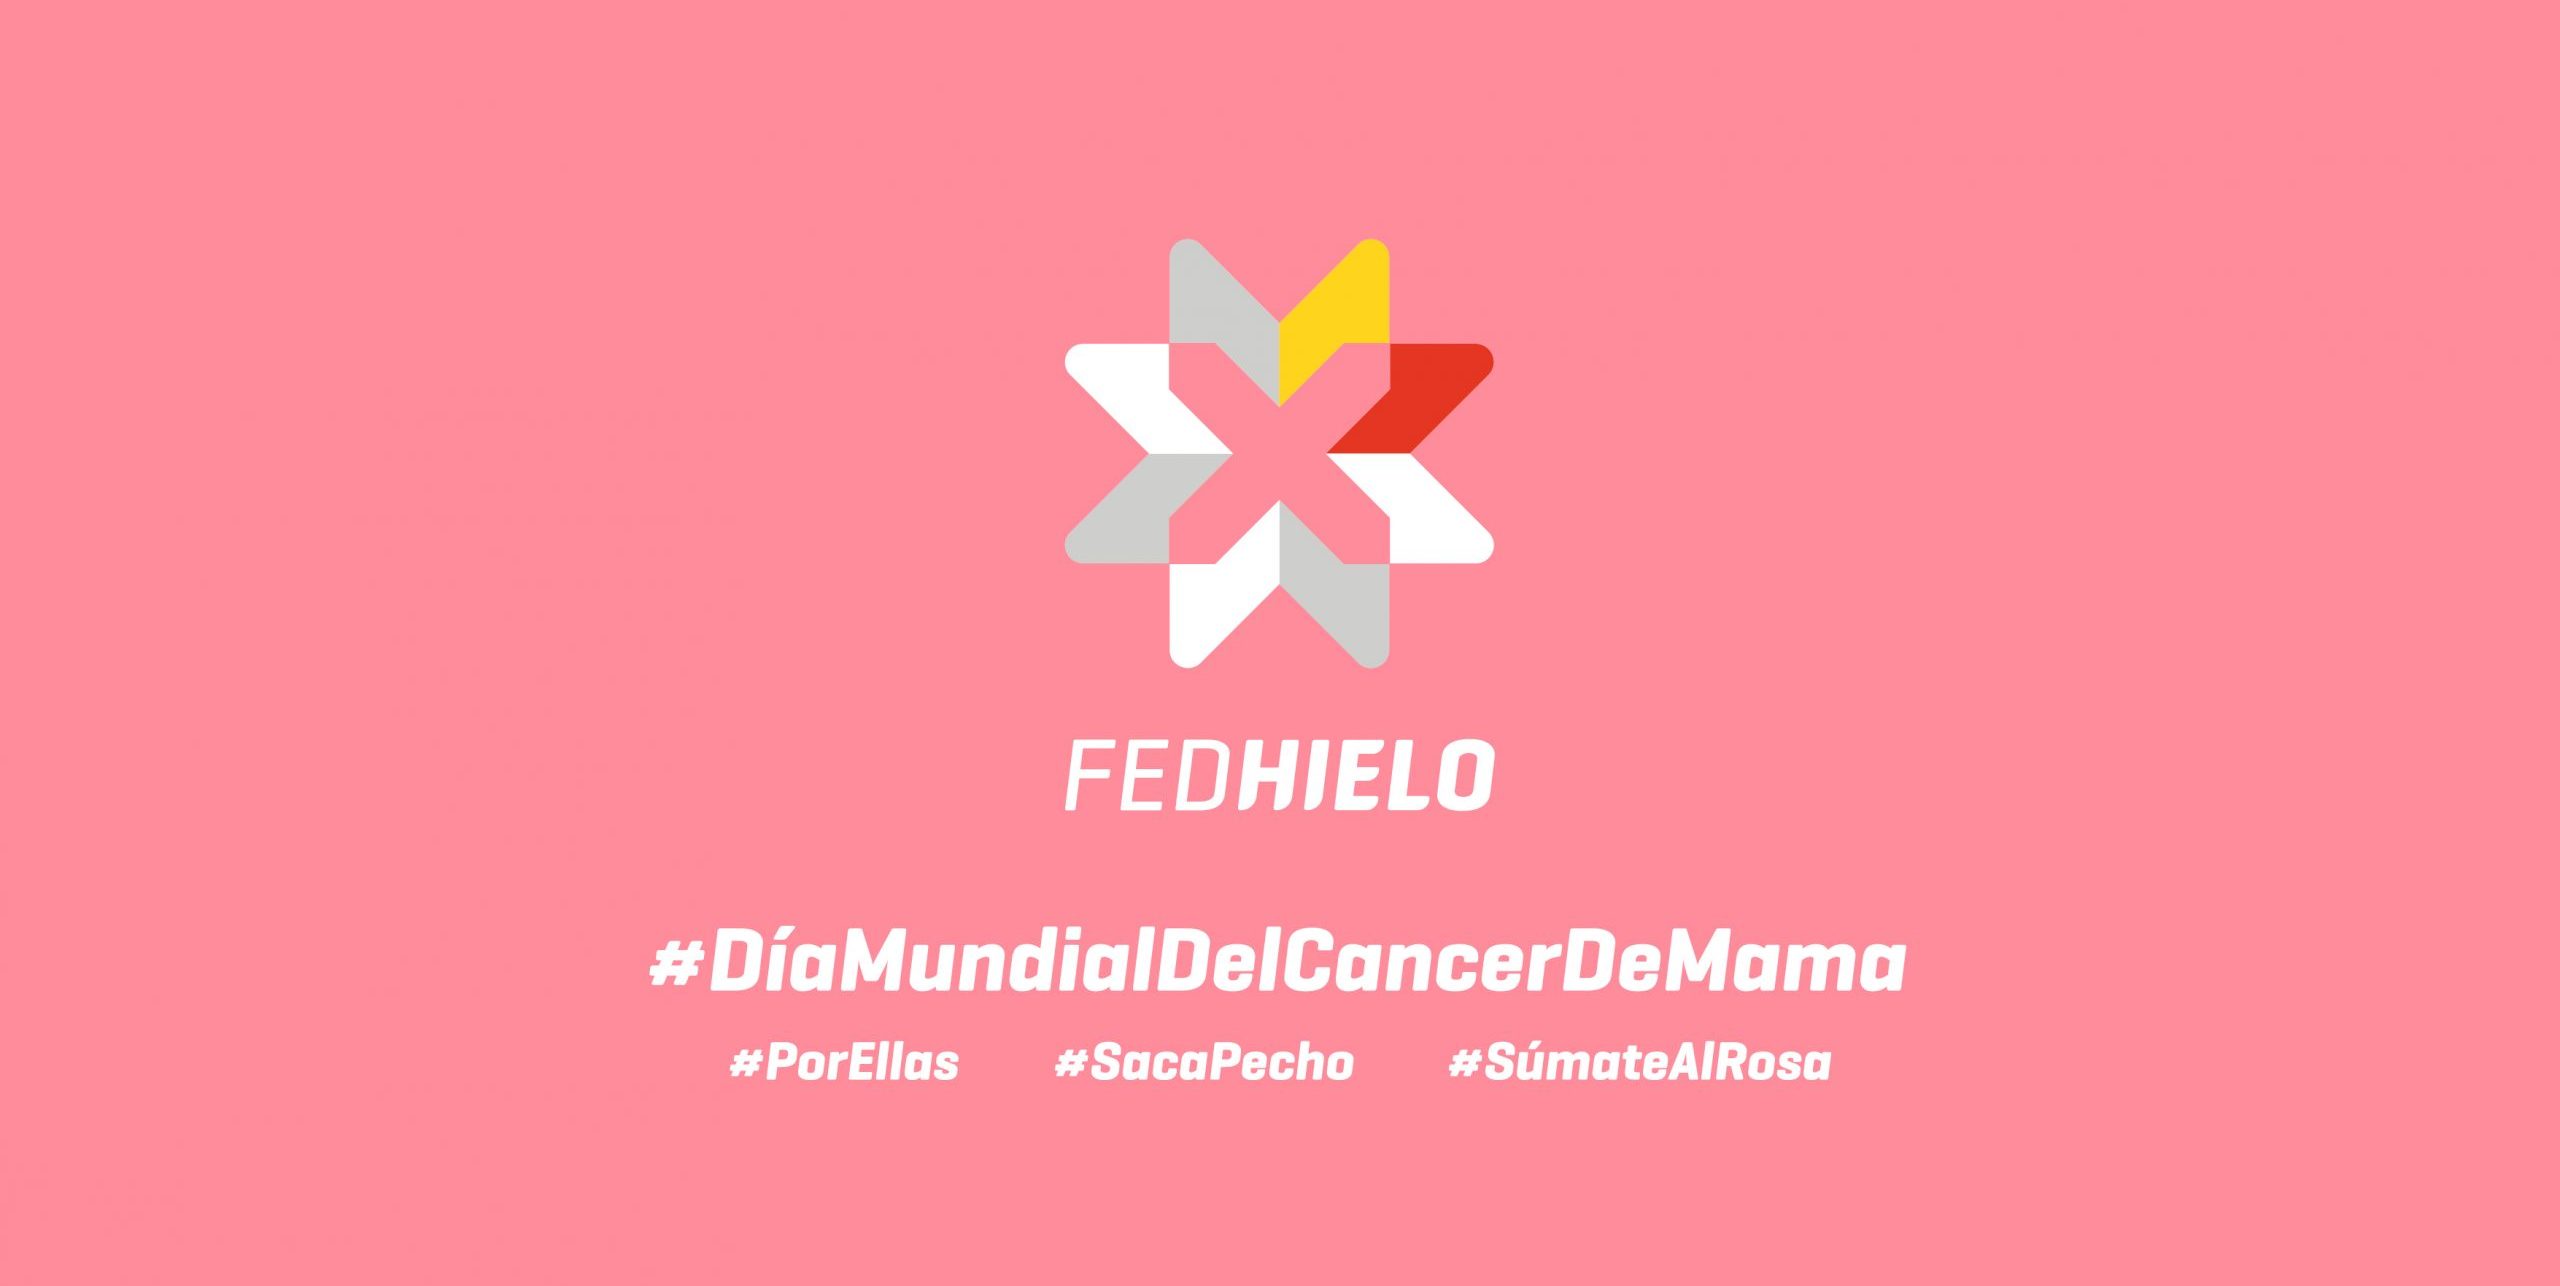 cáncer de mama, La FEDHielo se une al Día Mundial contra el cáncer de mama, Real Federación Española Deportes de Hielo